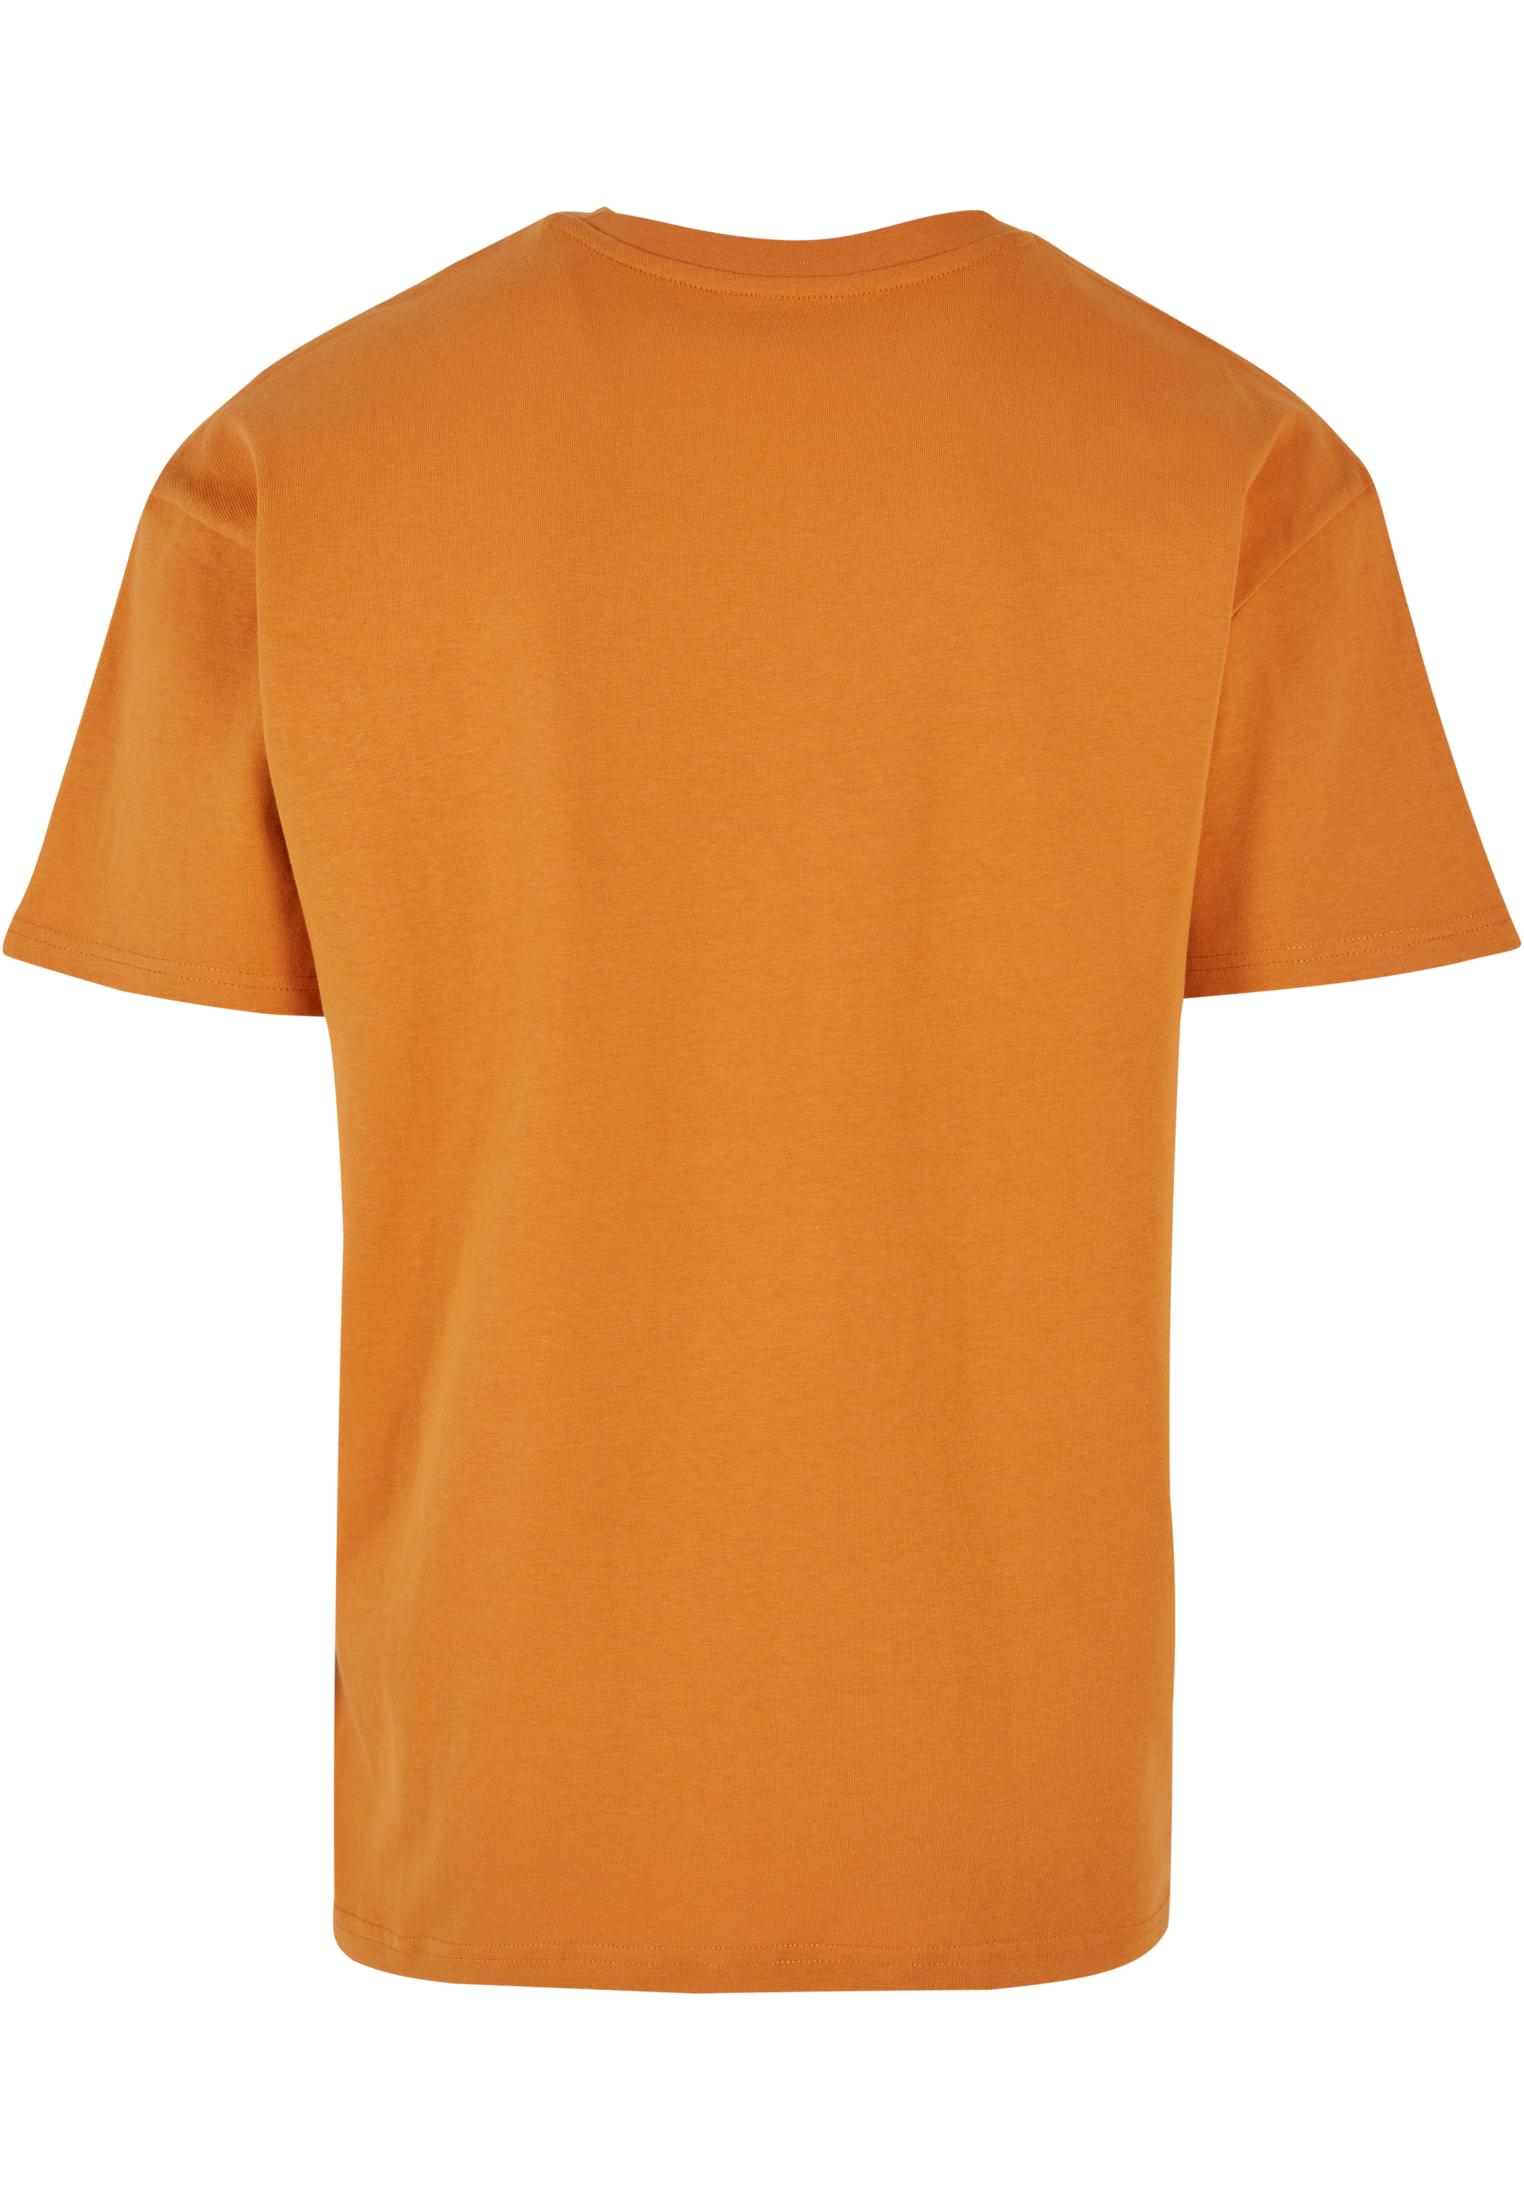 Soul Ova Gold Tees Bouquet Heavyweight T-Shirt (Forgotten Orange) Bouquet Heavyweight T-Shirt (Forgotten Orange)  | Soul Ova Gold